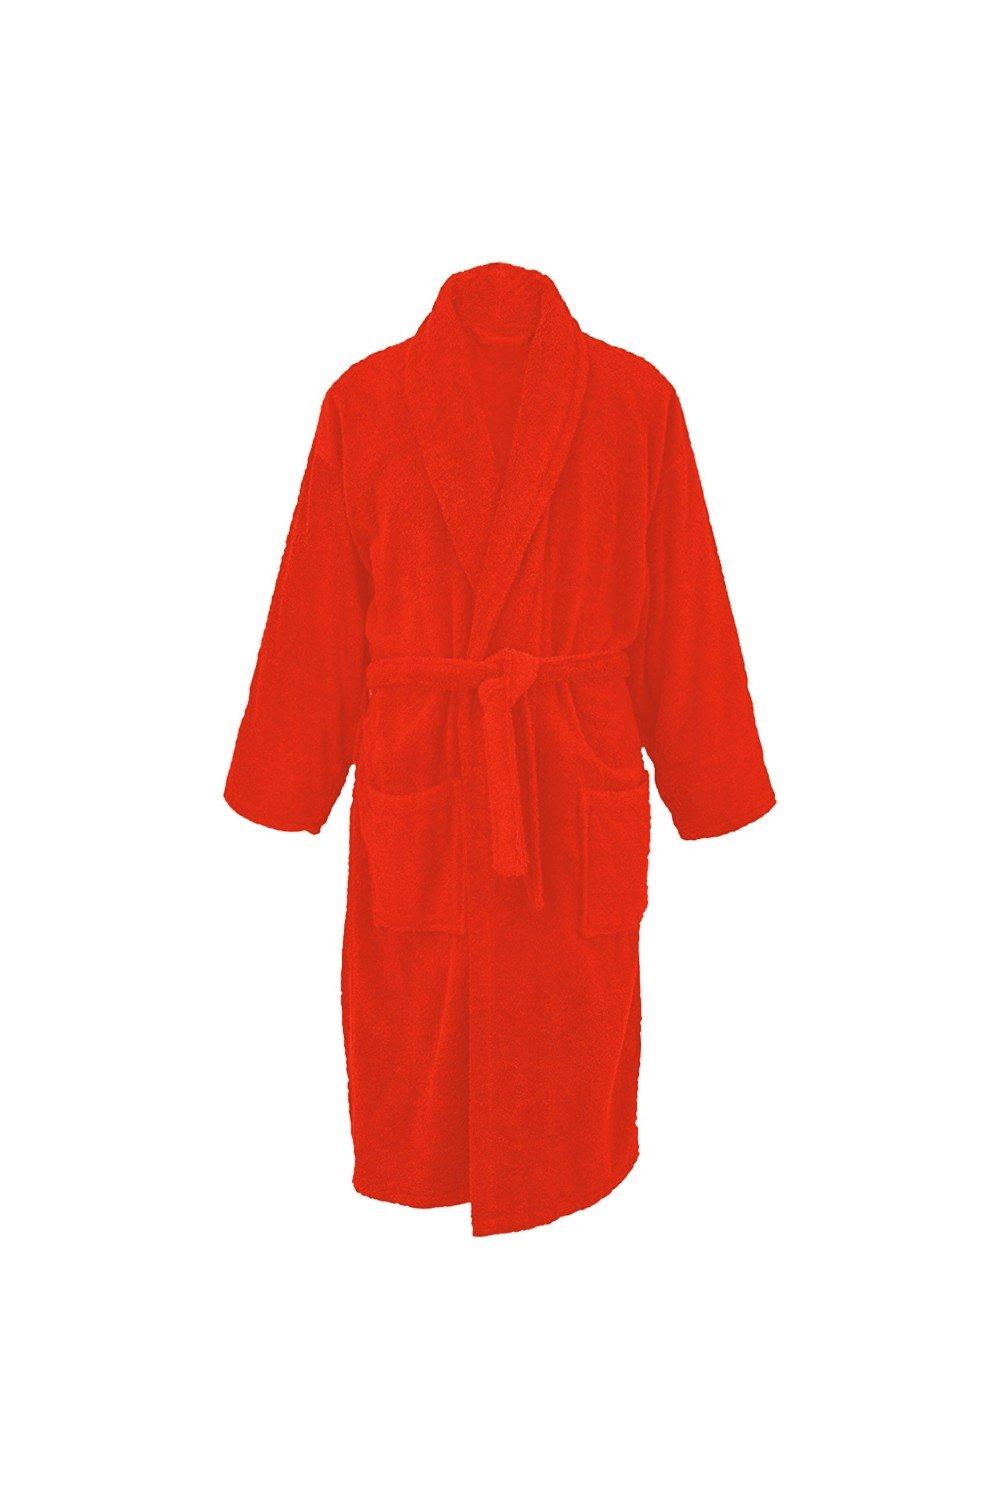 Bath Robe With Shawl Collar